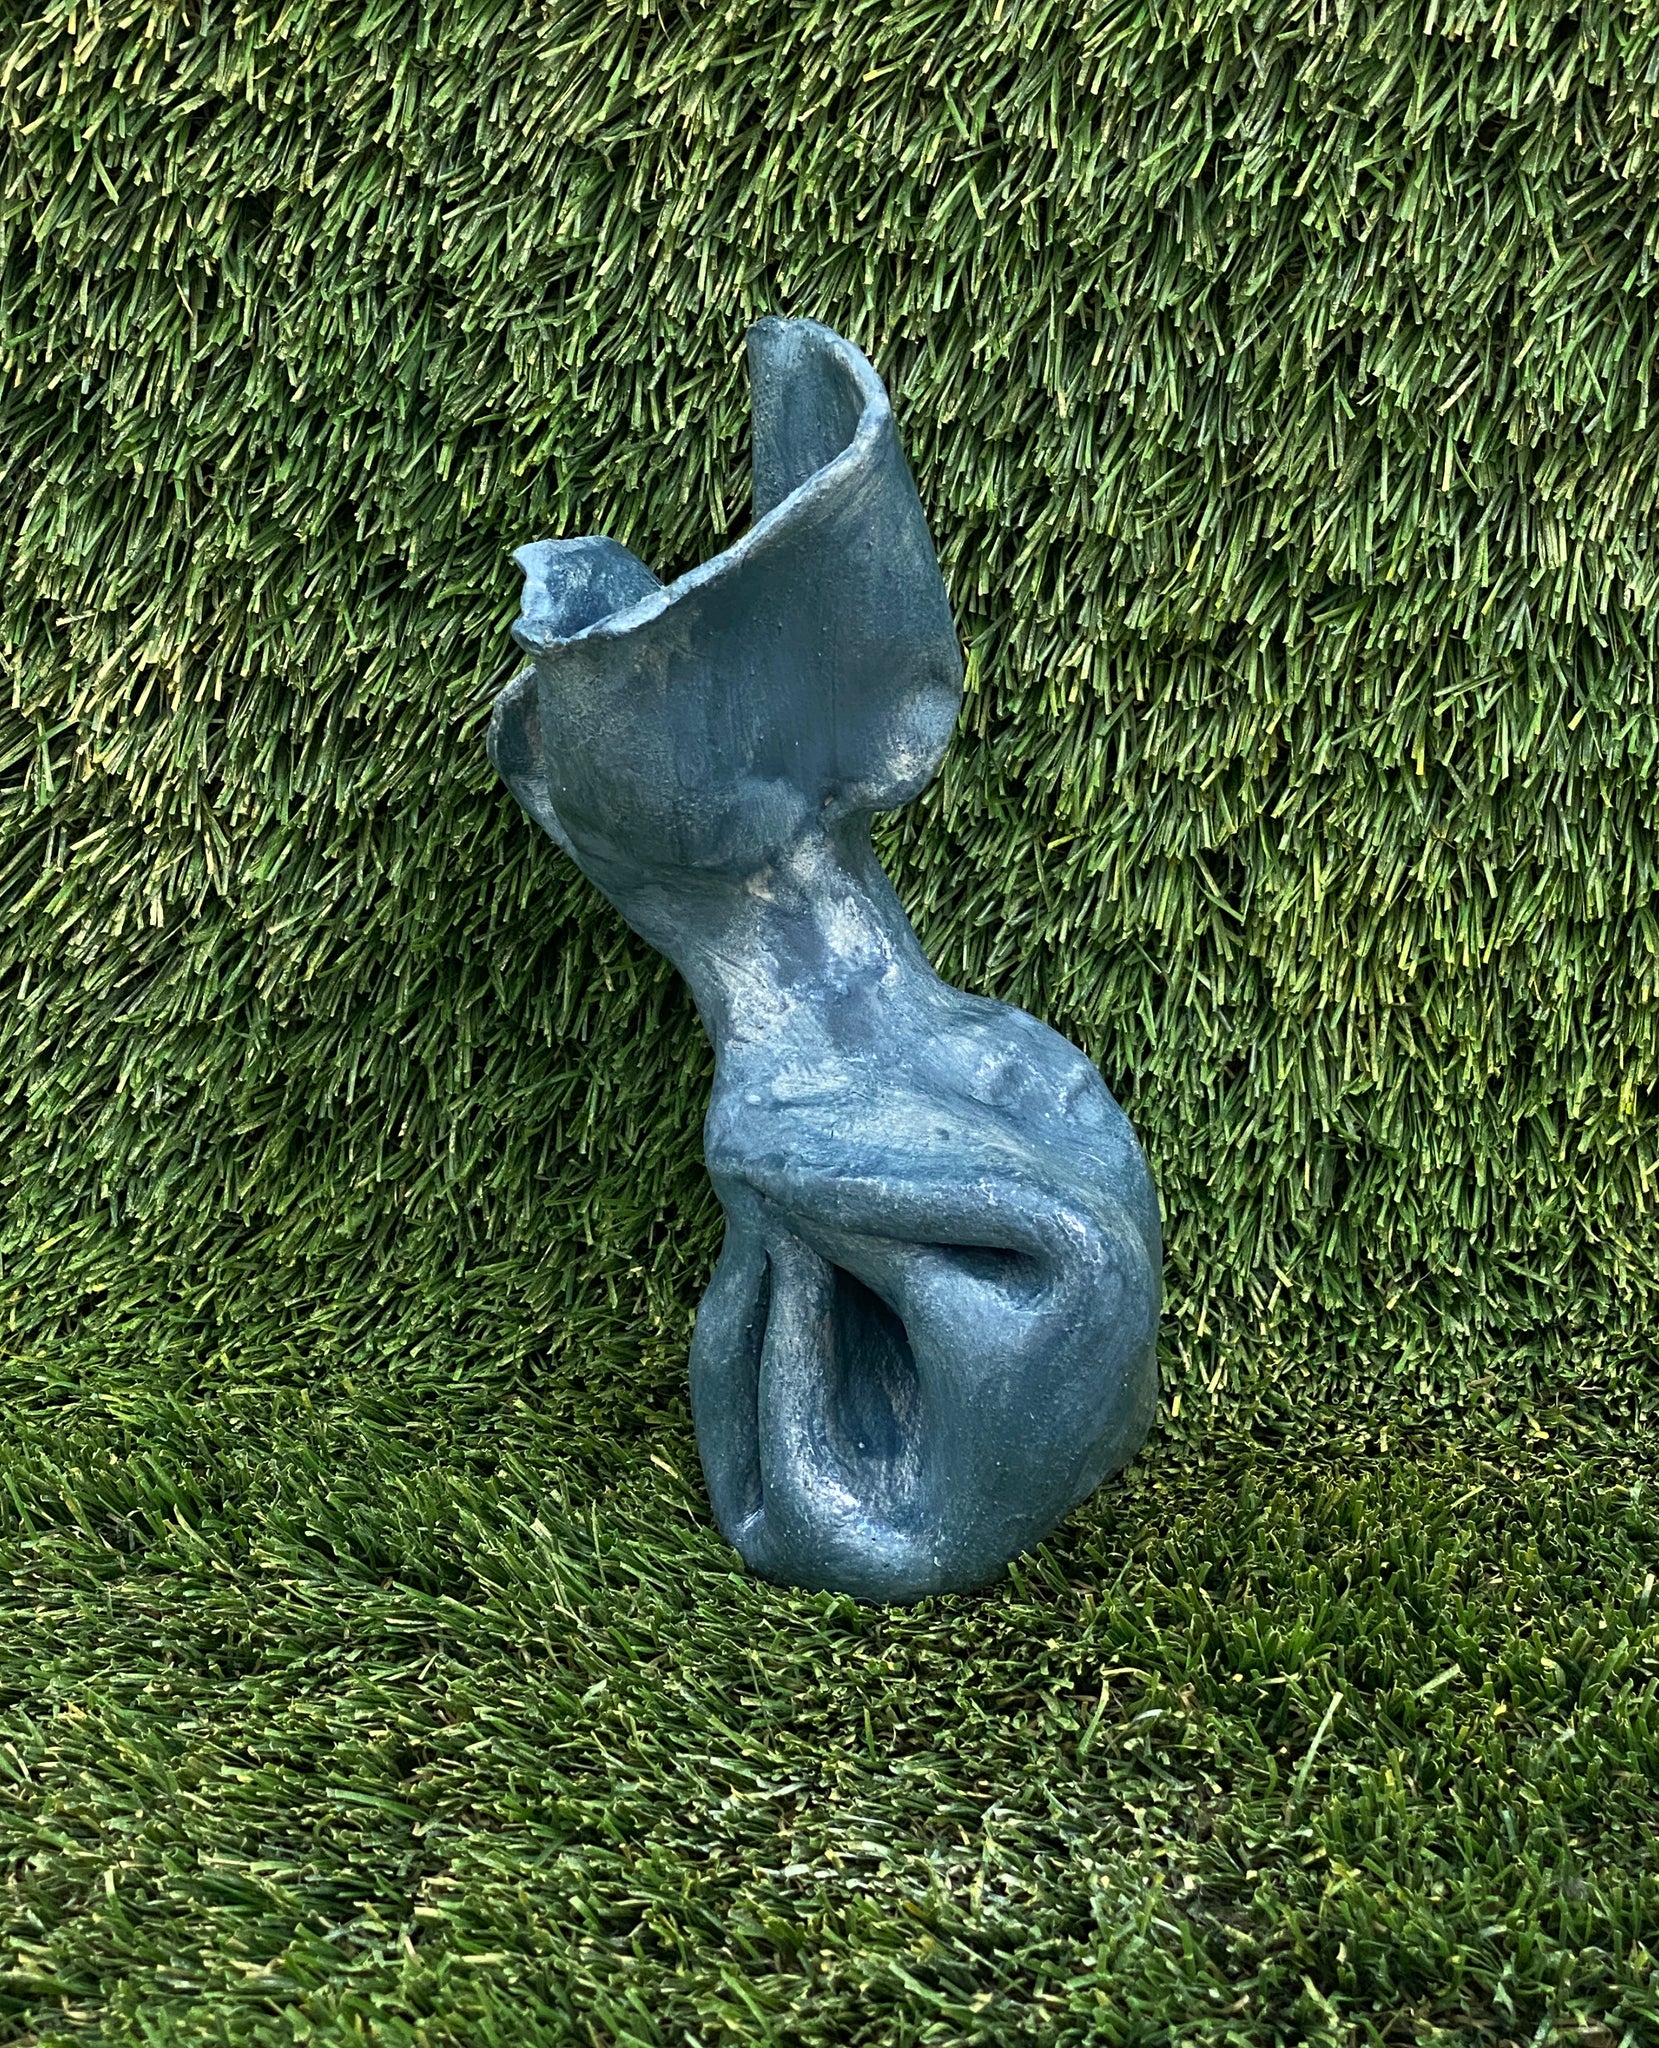 Ceramic sculpture of dog poop bag in blue